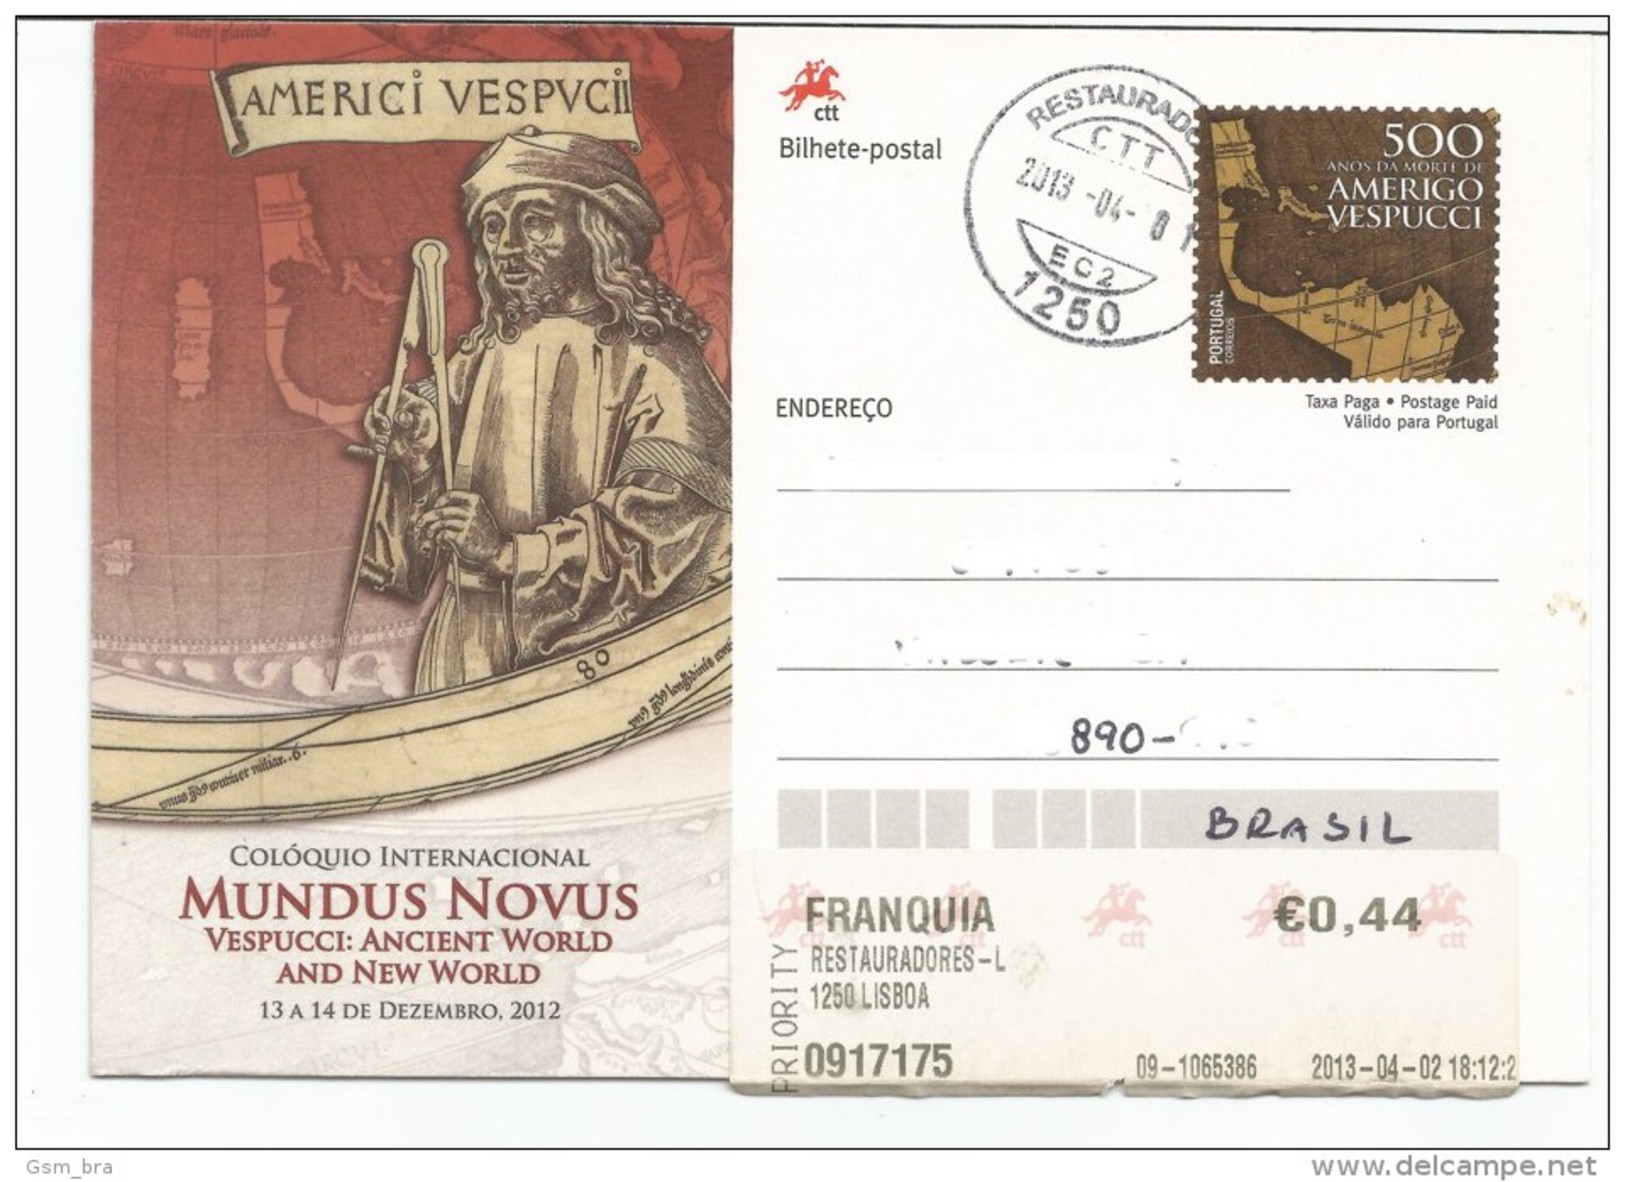 Portugal 2013: Amerigo Vespucci - Postal Stationery (Used) / Map, Quadrant, Explorer - Exploradores